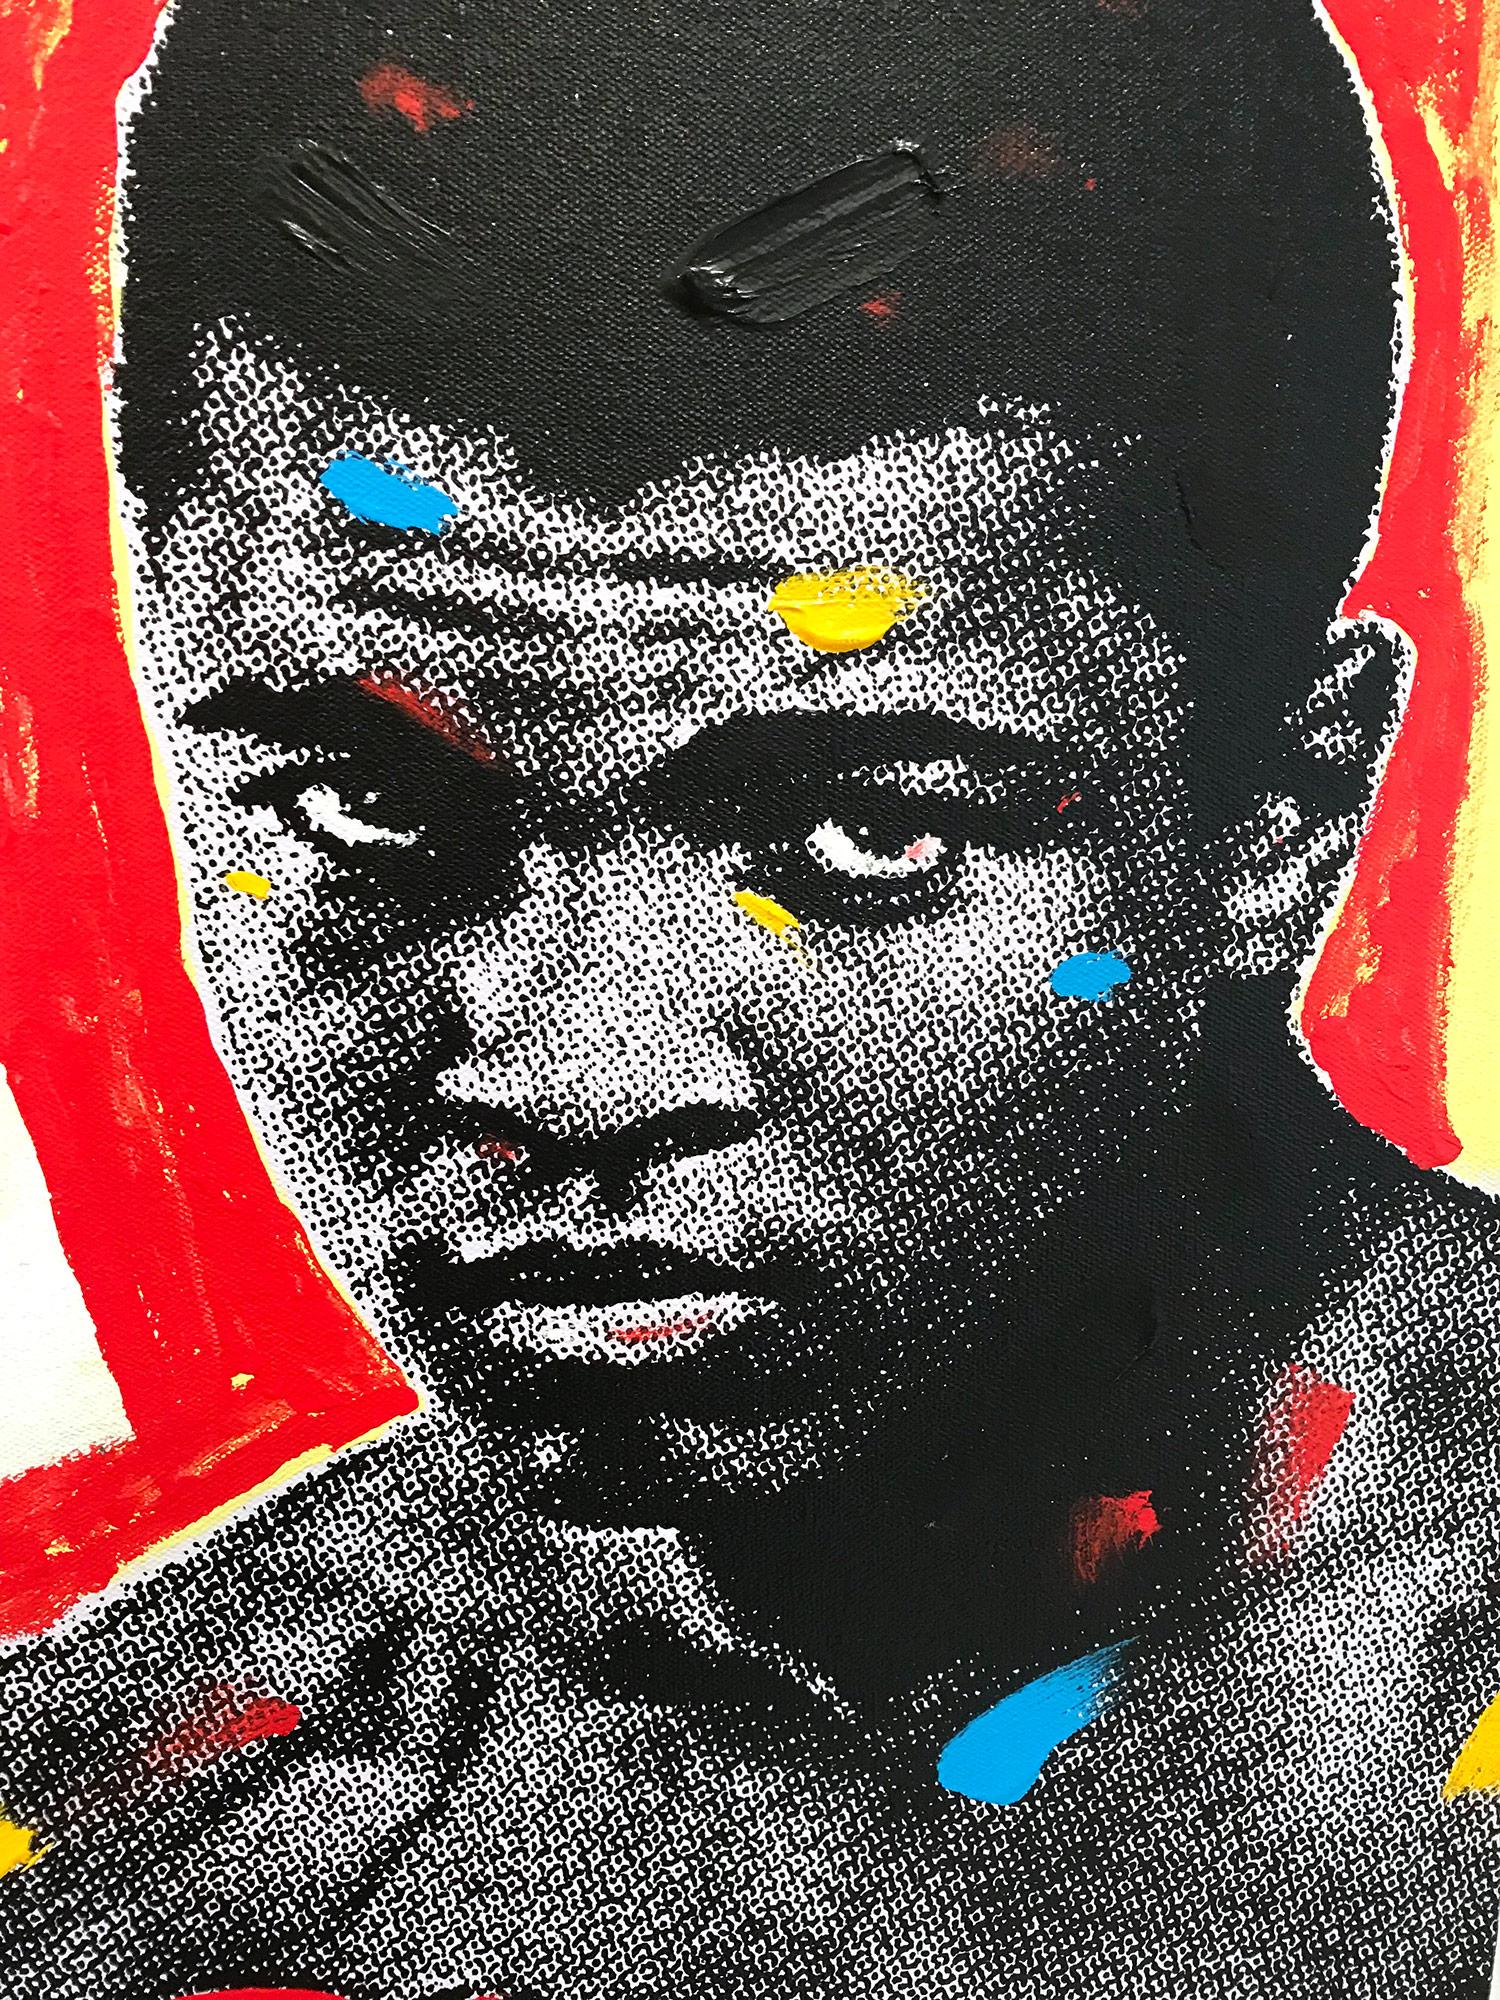 Peinture Pop Art Muhammad Ali sur toile fond rouge et jaune - Contemporain Painting par John Stango